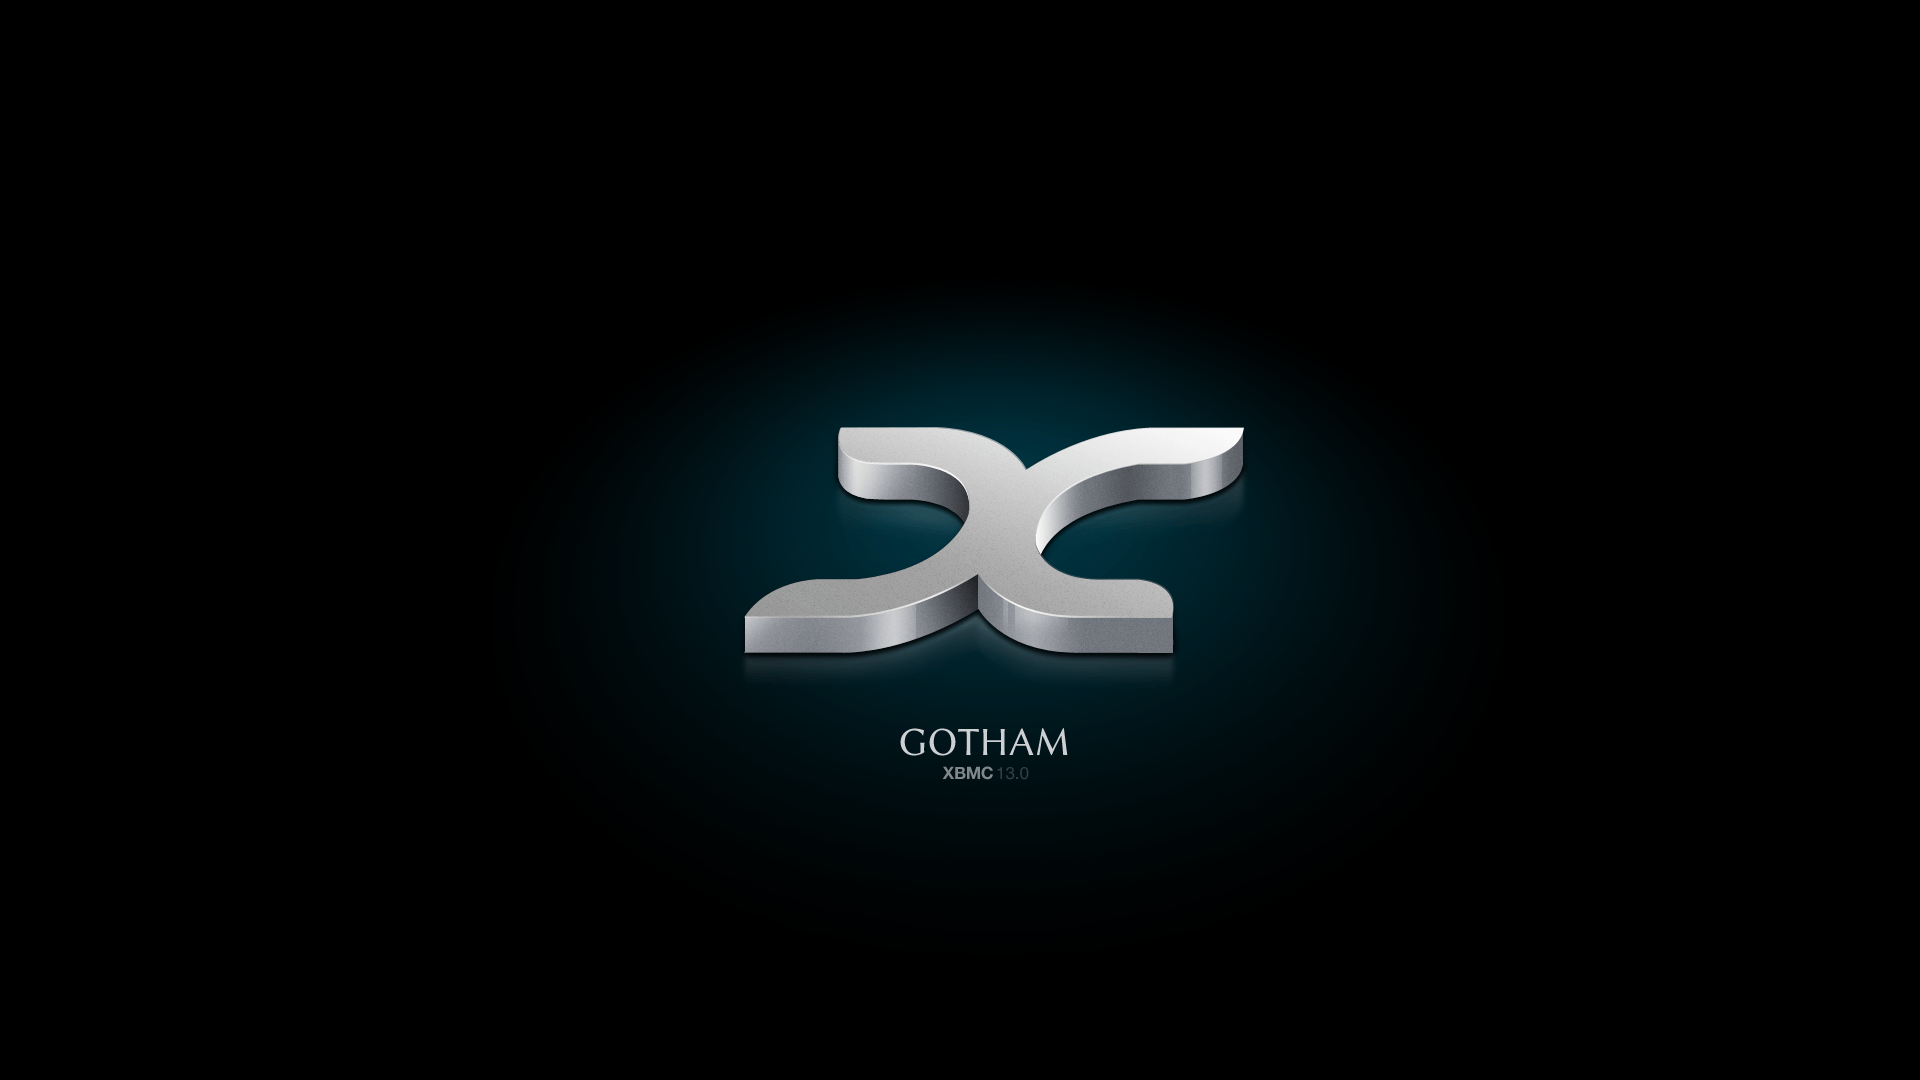 Official XBian 1.0 RC 2 Gotham (XBMC 13) thread